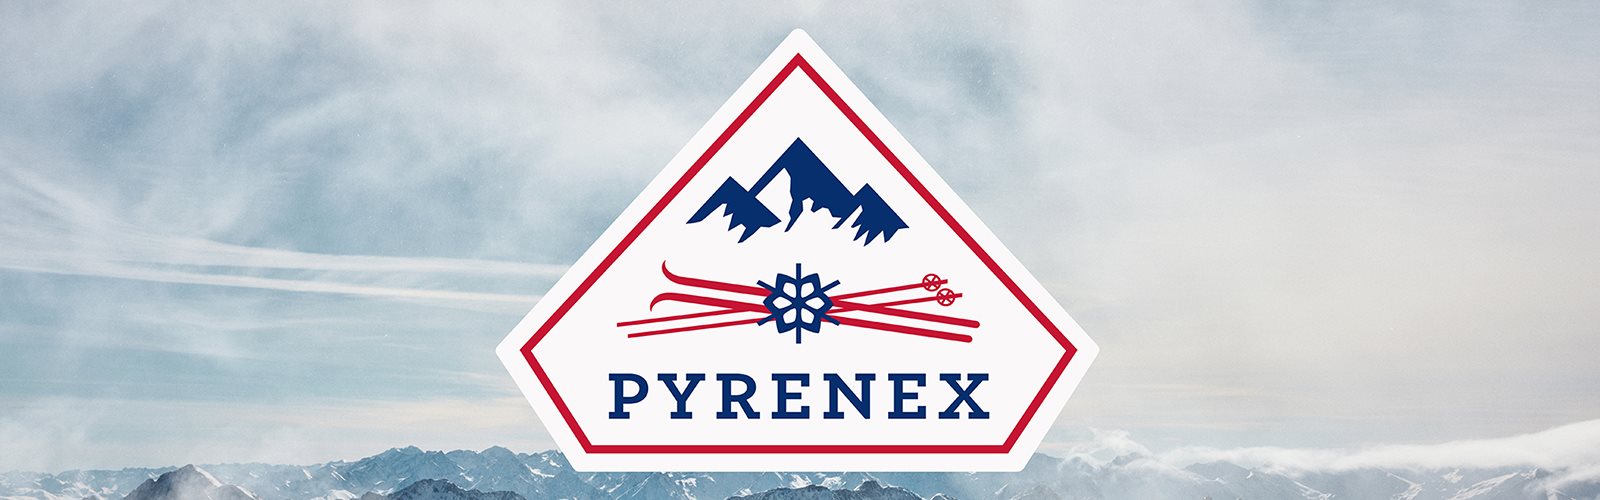 Pyrenex varumärkesbild